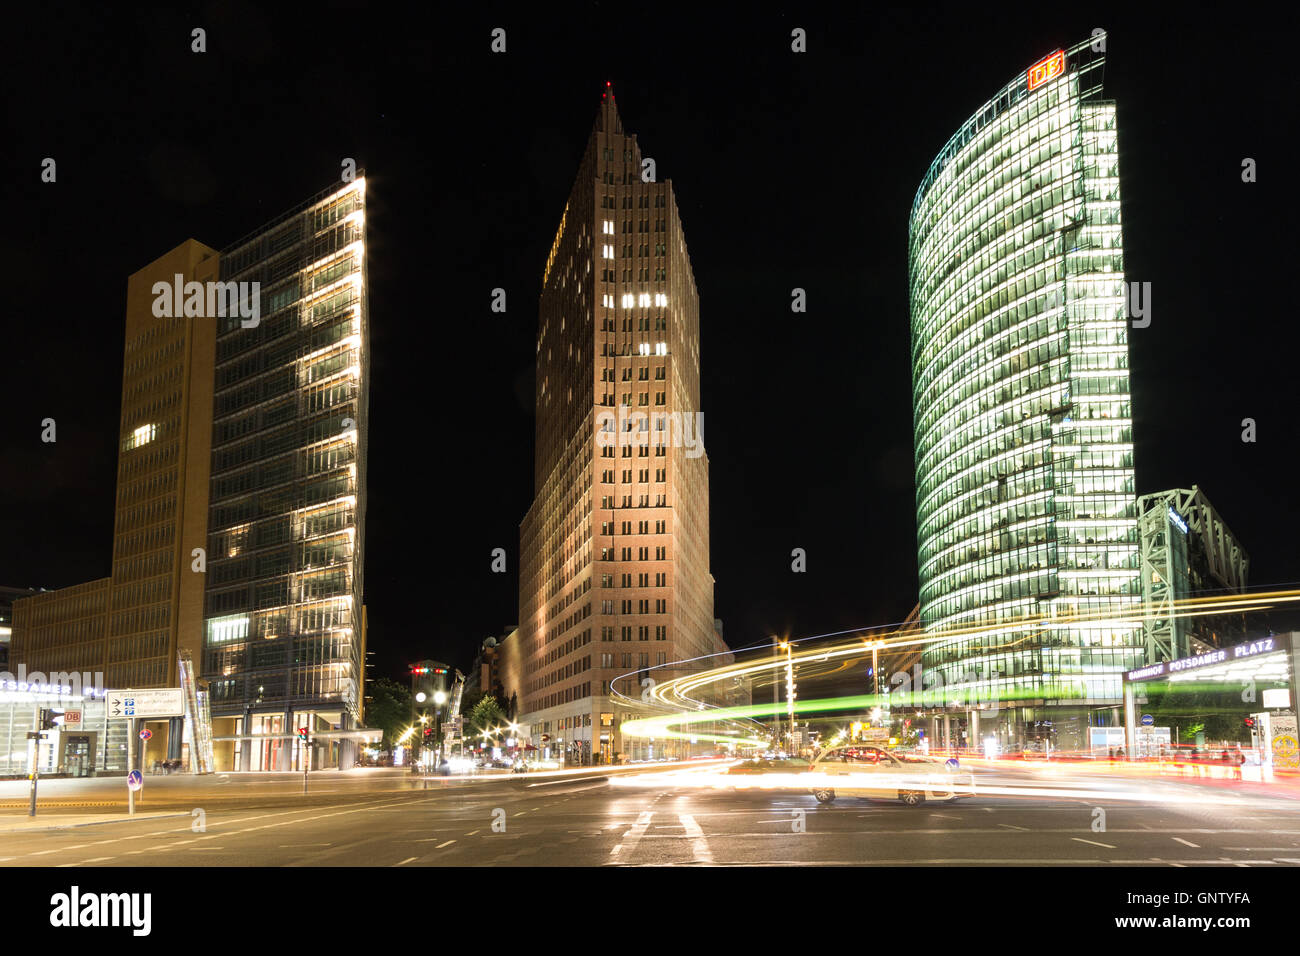 Bürogebäude und Straßenverkehr in der Nacht - Potsdamer Platz in Berlin, Deutschland. Stockfoto